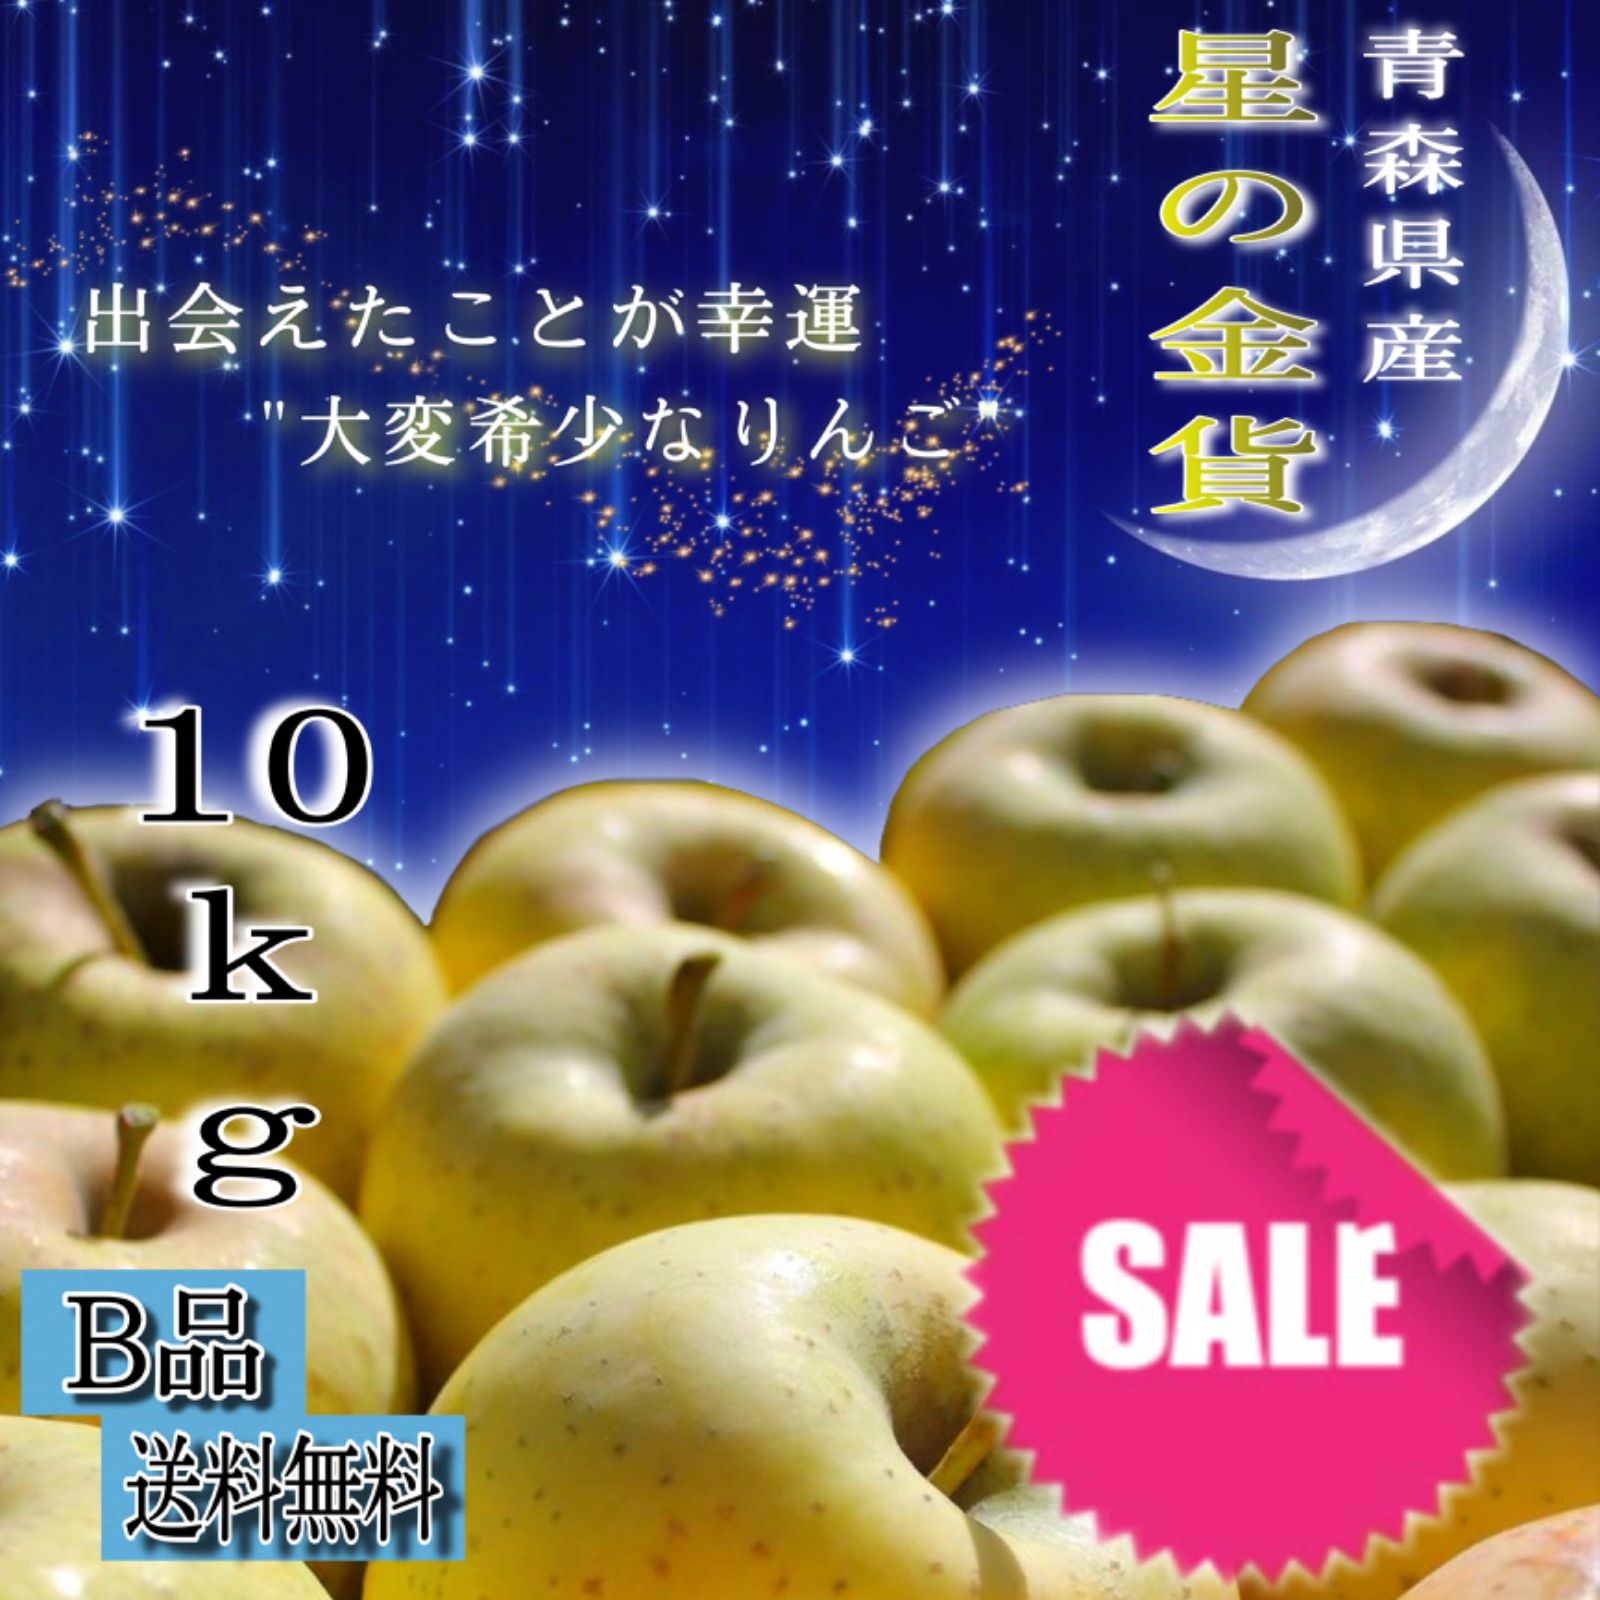 青森県産 星の金貨 りんご【B品10kg】【送料無料】【農家直送】リンゴ ふじ-0